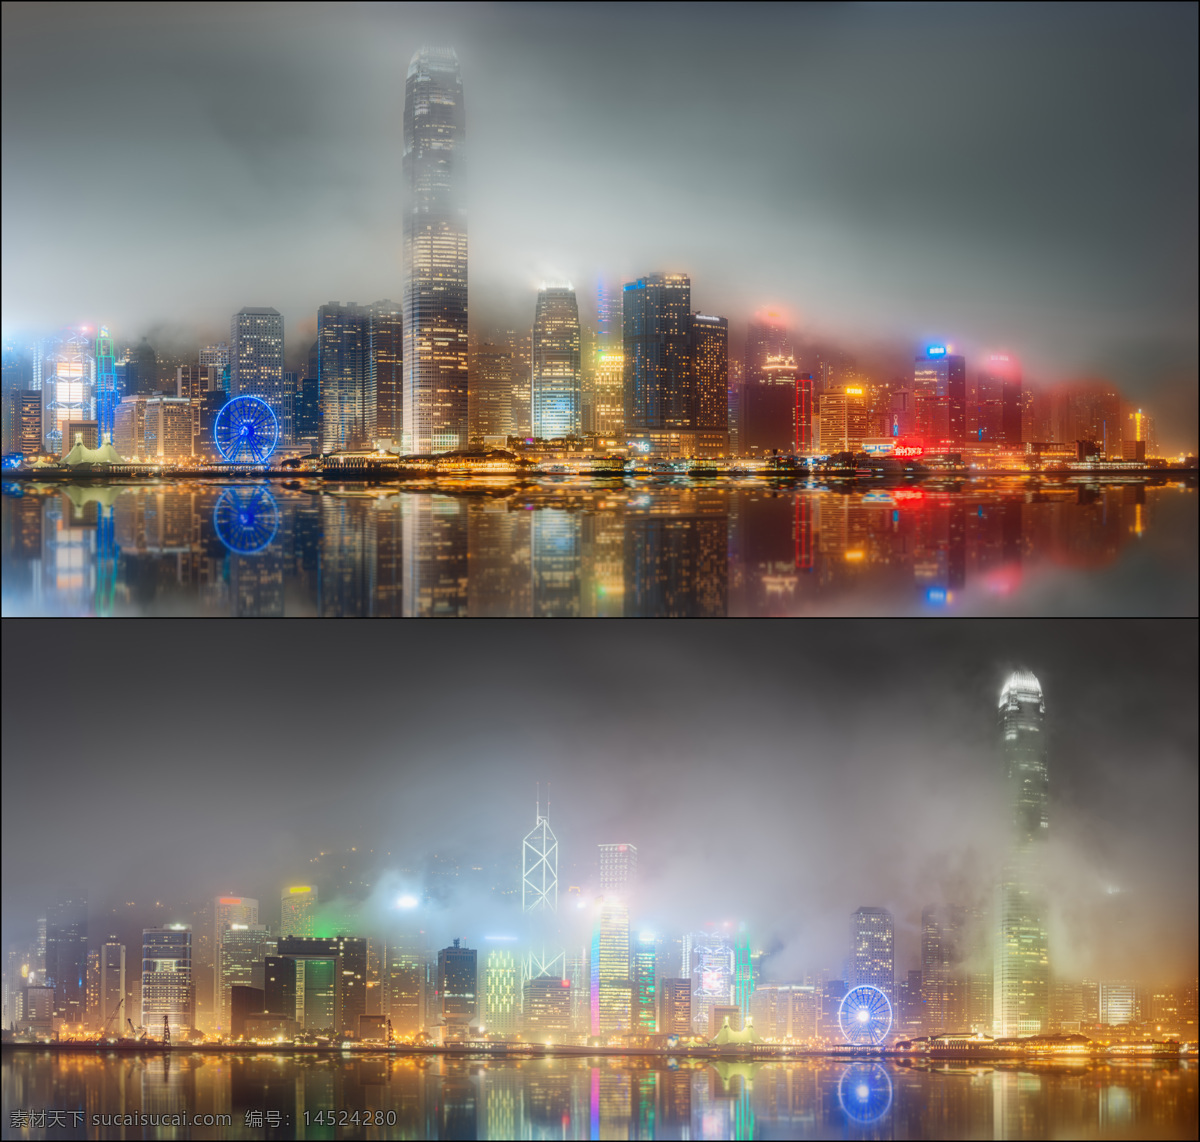 繁华 香港 夜景 香港夜景 高楼大厦 摩天大楼 城市风景 城市夜景 美丽风景 美丽景色 繁华都市 城市风光 环境家居 灰色